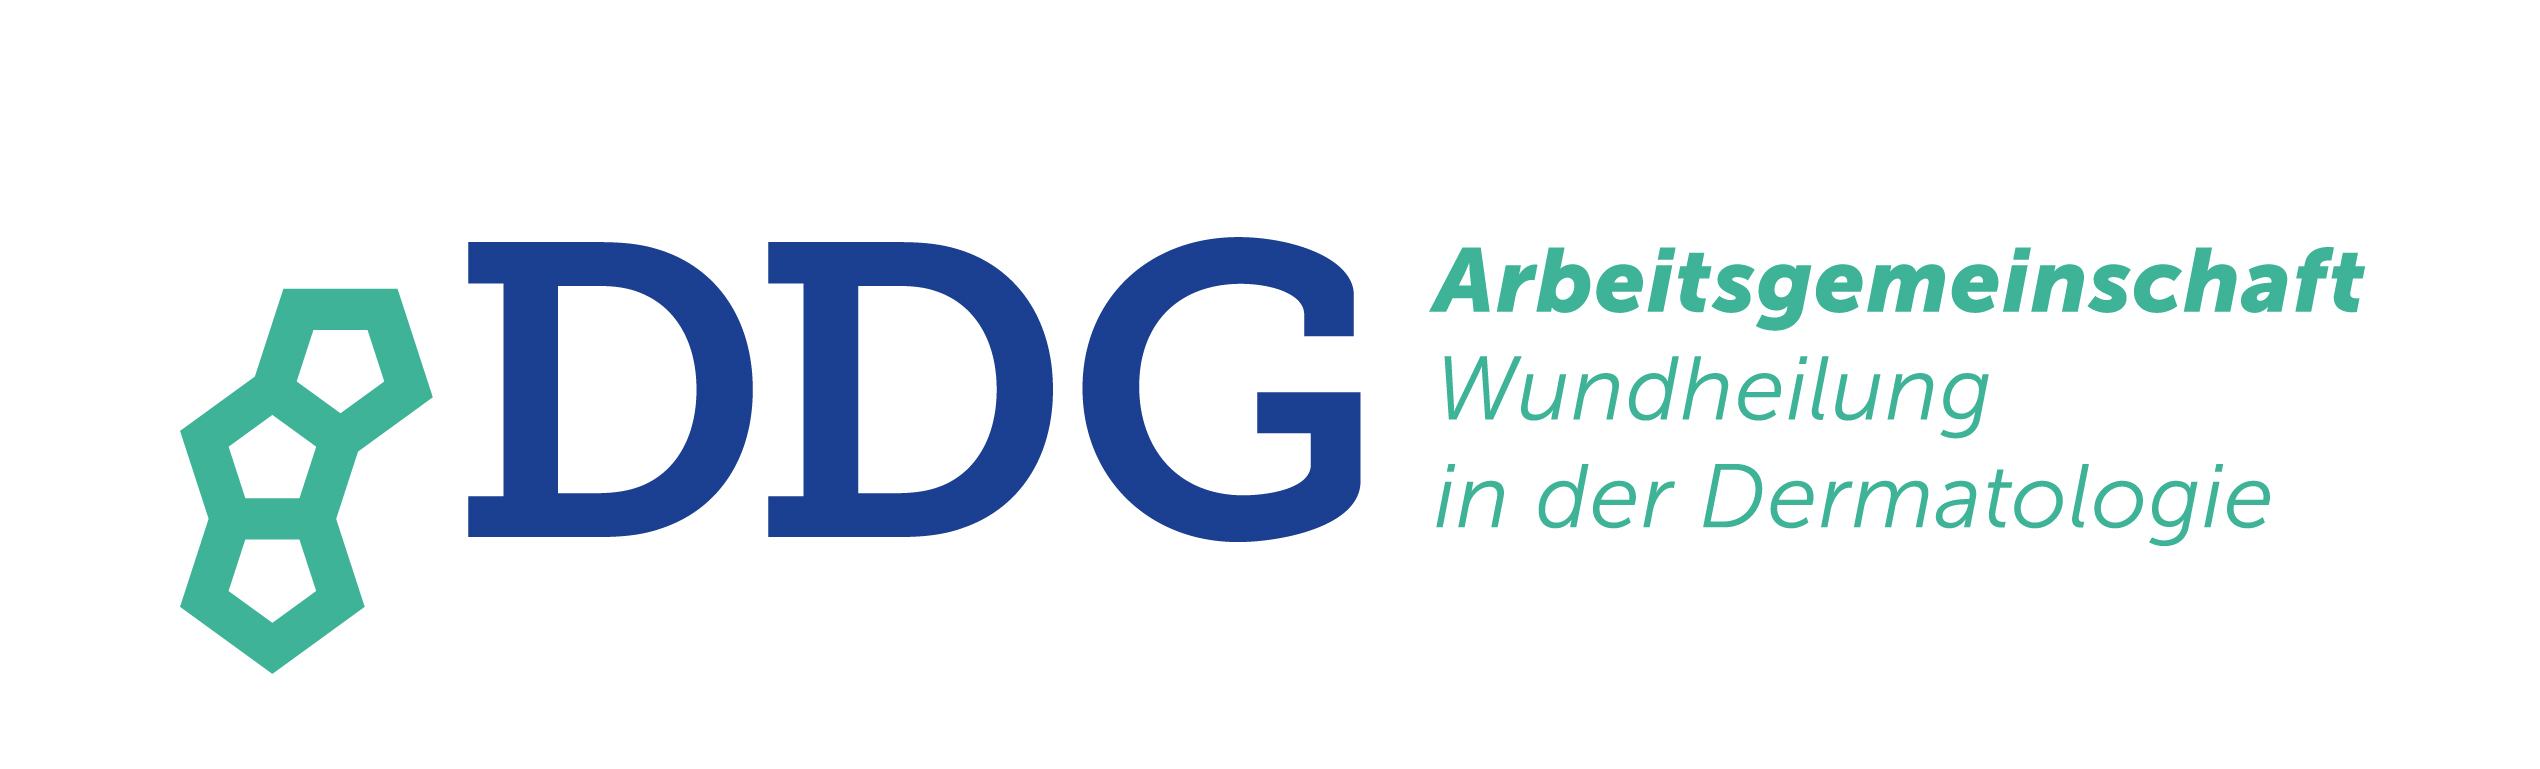 Zur Website der Deutschen Dermatologischen Gesellschaft e.V. 